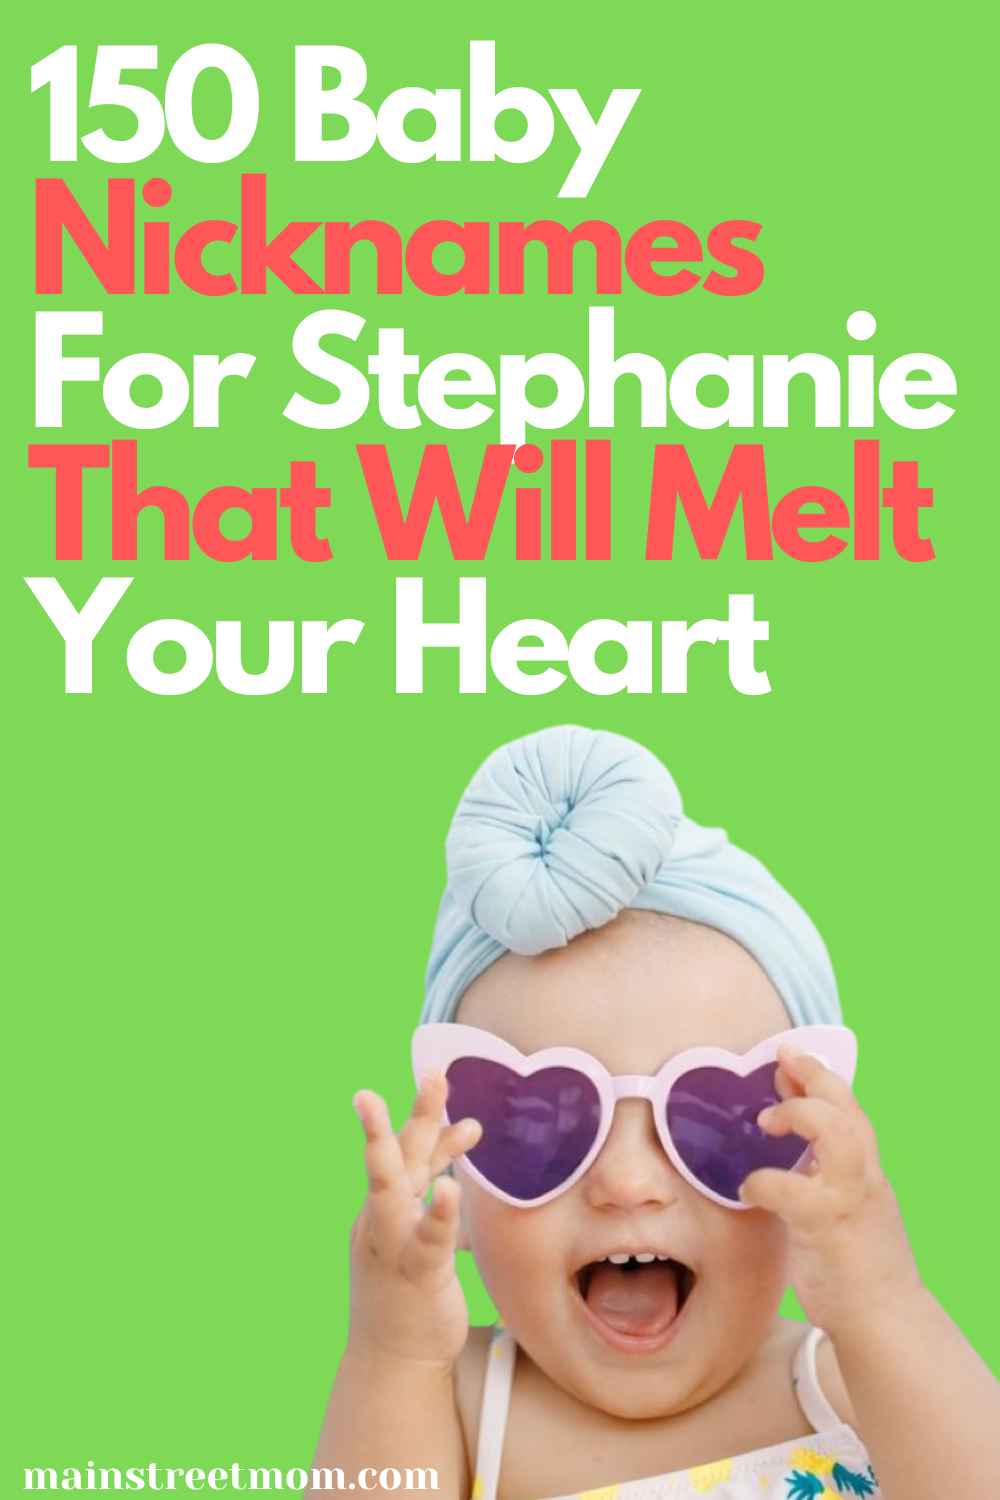 150 Baby-Spitznamen für Stephanie, die Ihr Herz zum Schmelzen bringen werden